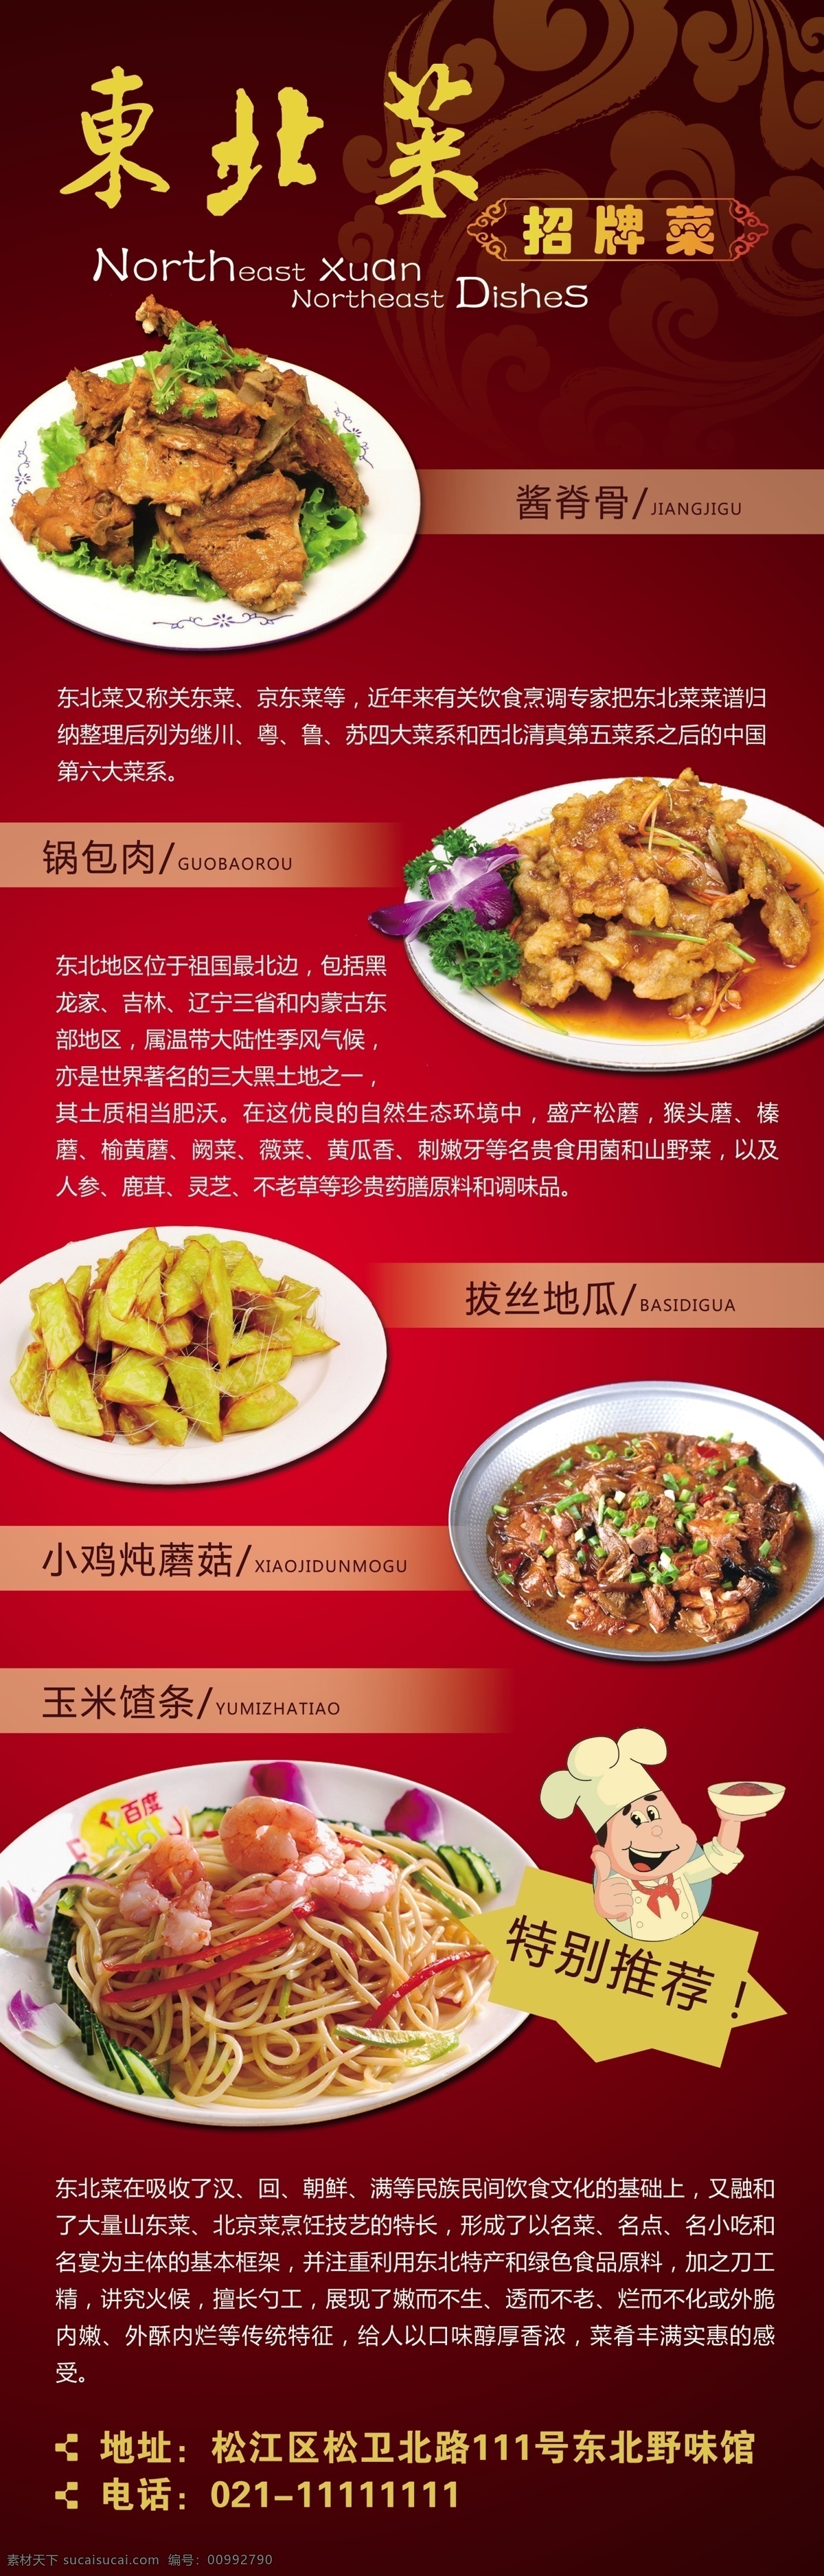 东北菜 菜肴 美食 民俗 易拉宝 展架 海报 宣传海报 宣传单 彩页 dm